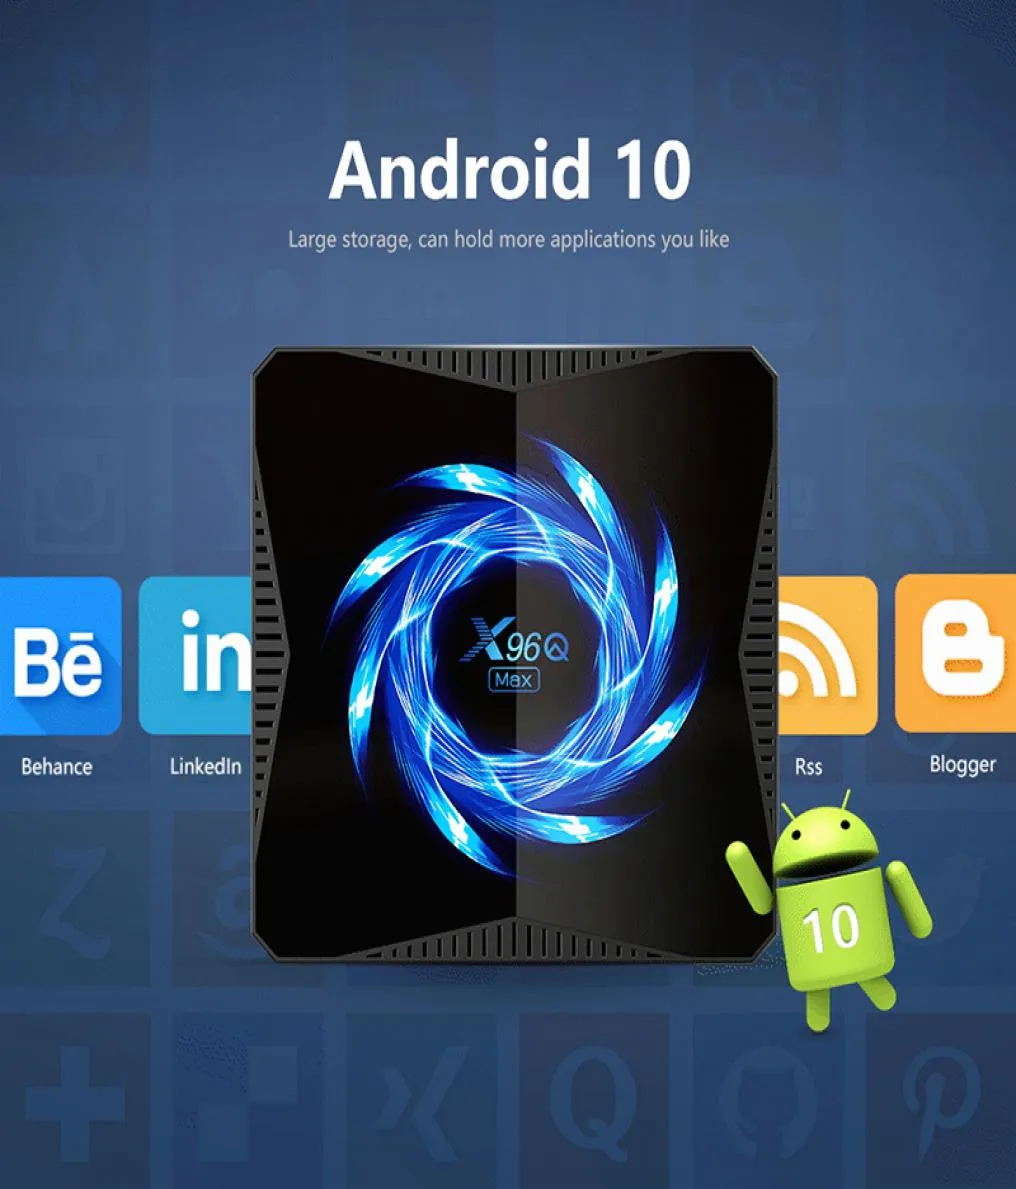 X96Q MAX Android 10.0 TV Box 4GB 32 AllWinner H616 Dual WiFi Bt 4K HDR YouTube x96 Caixas de primeira linha